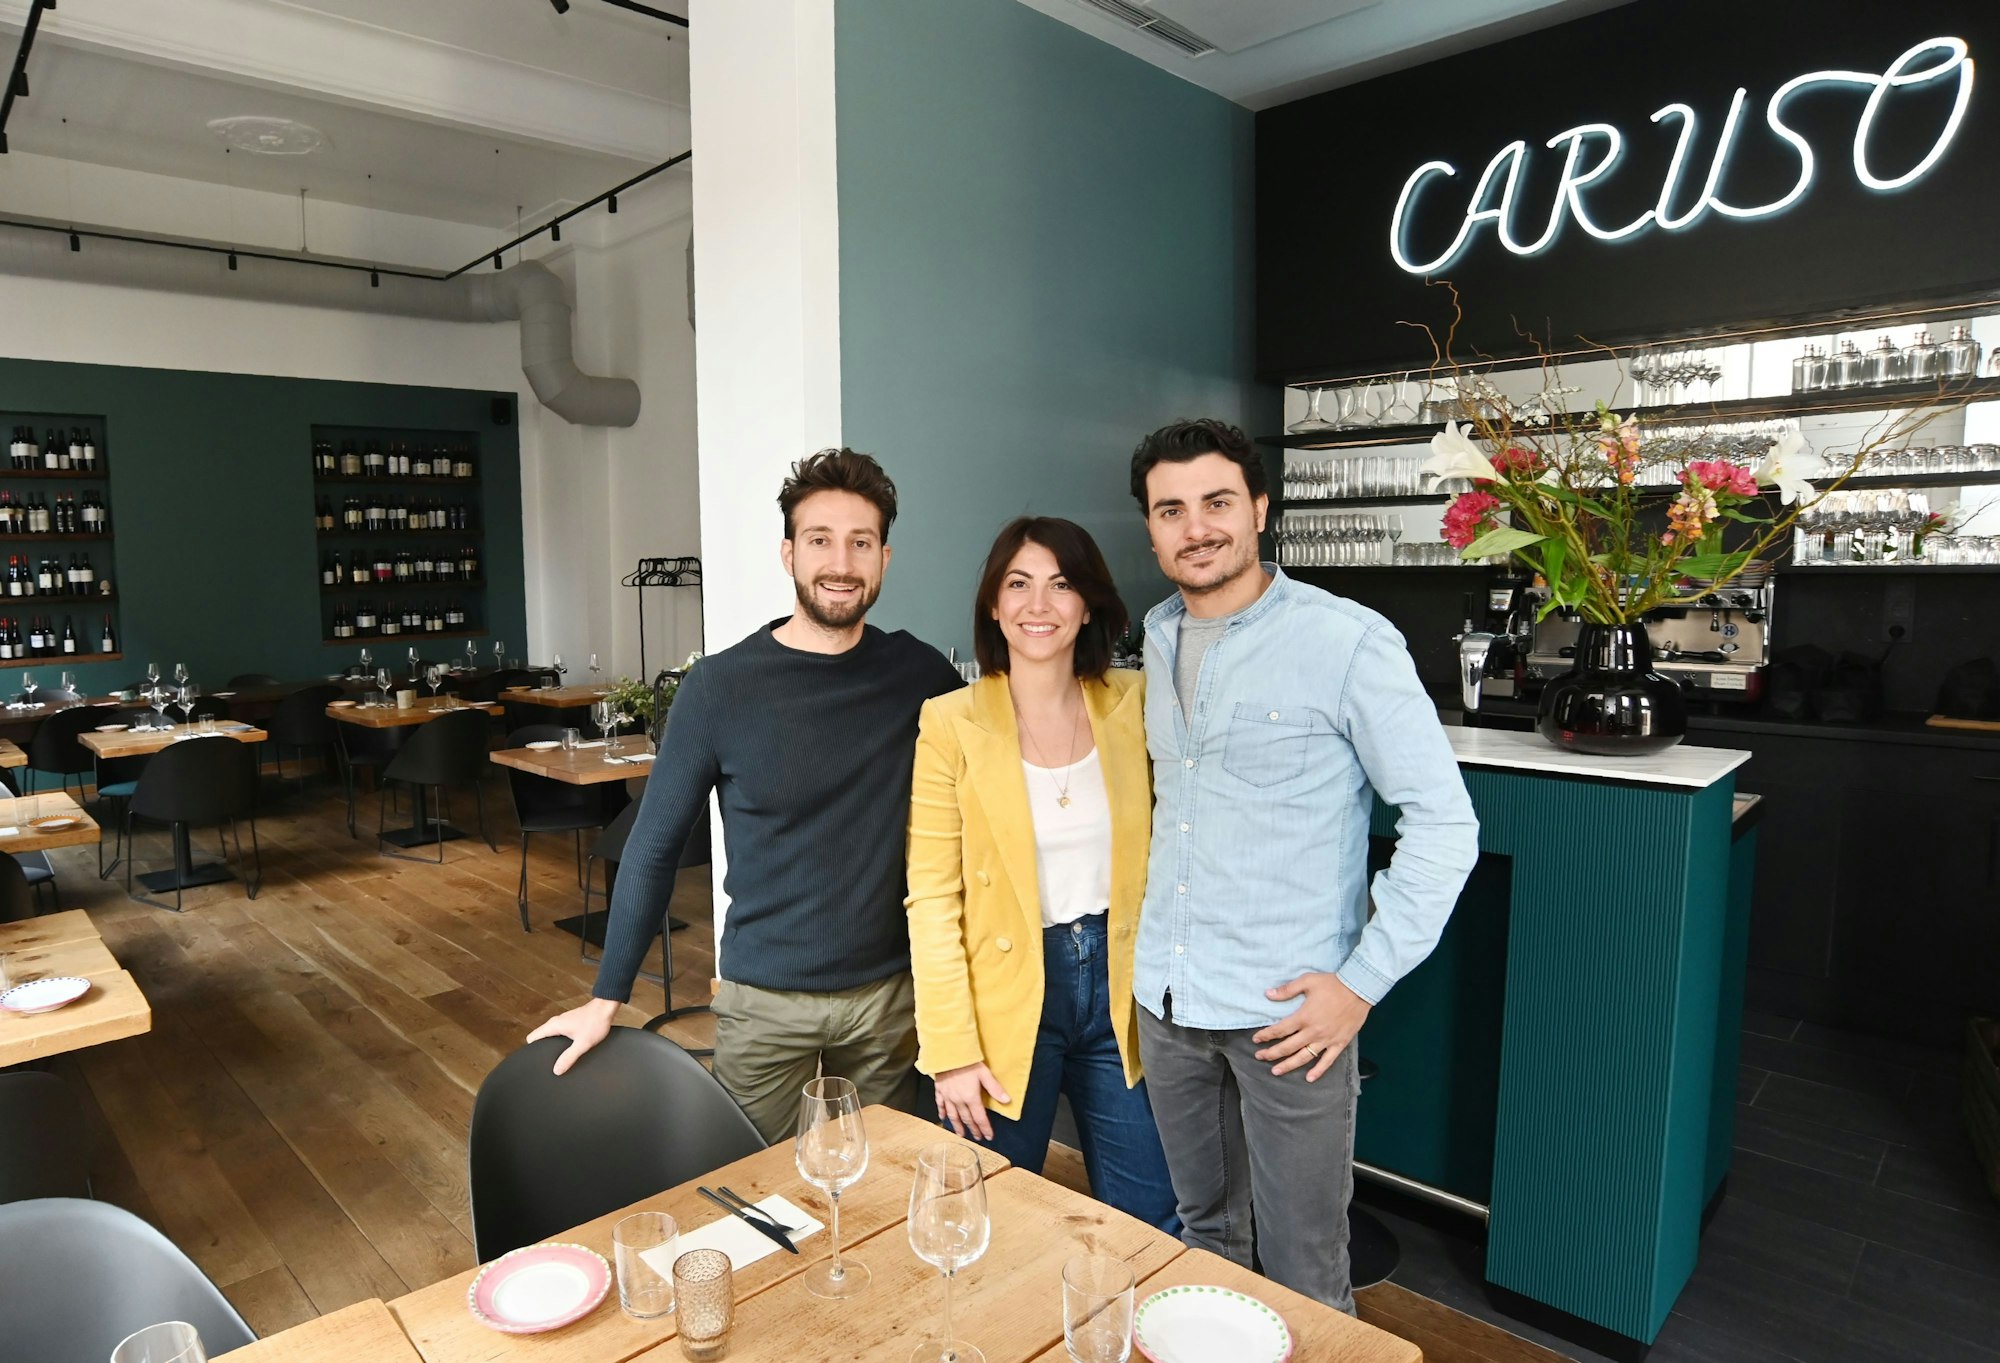 Emanuele Barbaro, Anna Siena, Marcello Caruso in ihrem Restaurant im Agnesviertel (Archivfoto)
